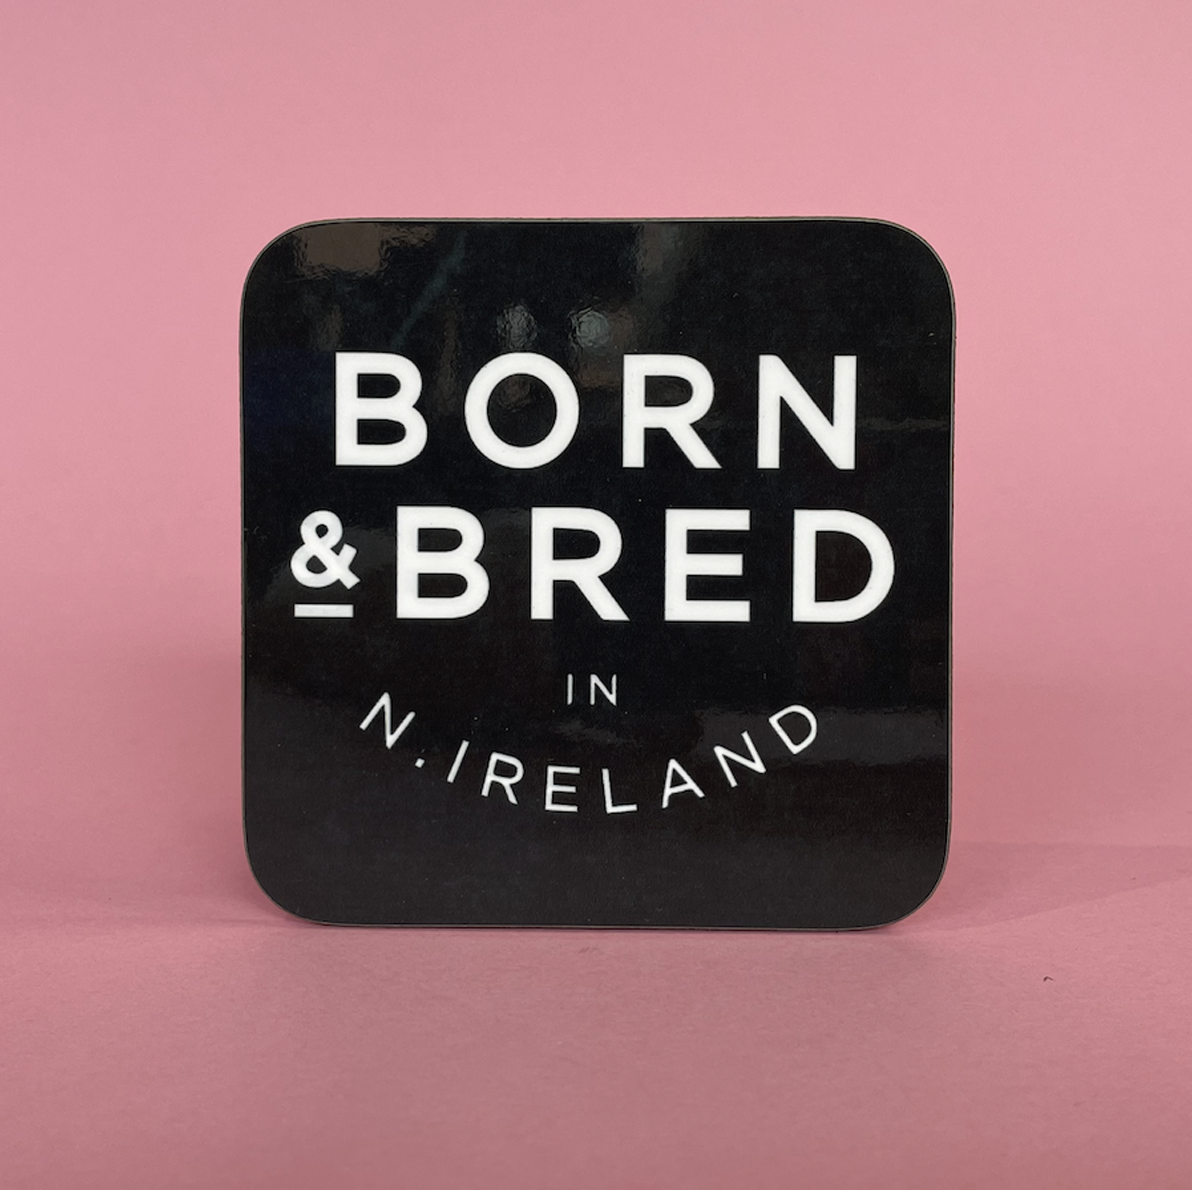 Posavasos Nacido y criado en Irlanda del Norte